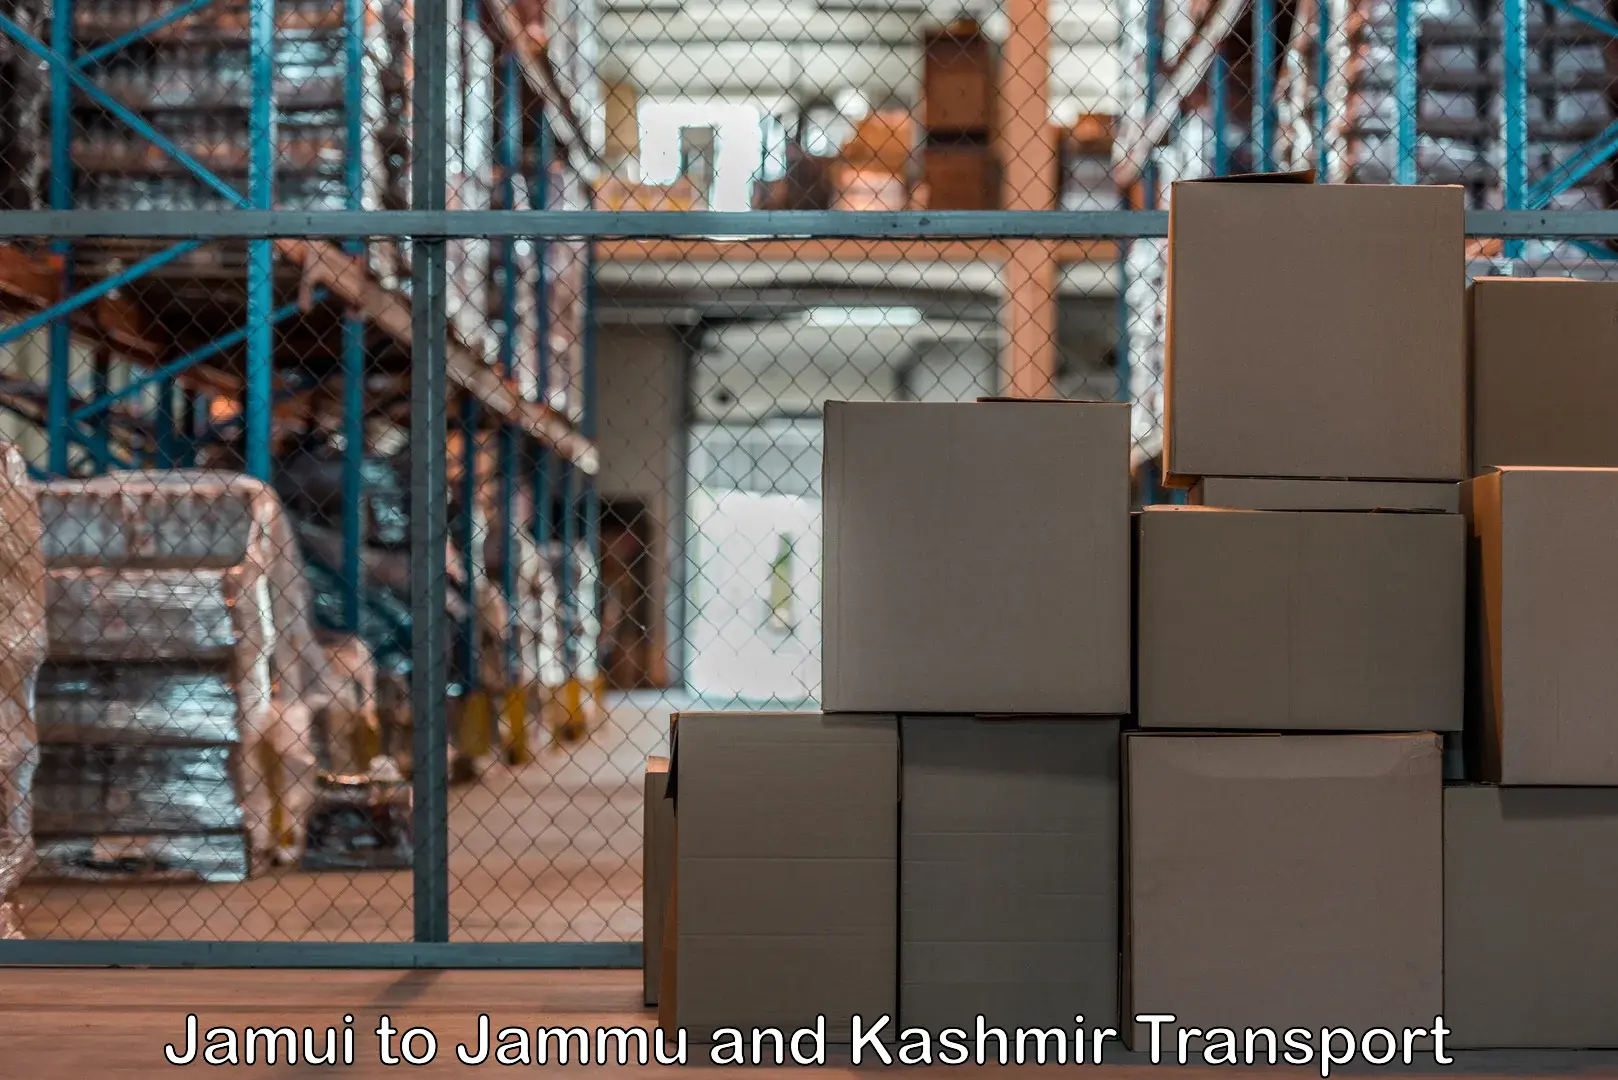 Container transport service Jamui to Ranbir Singh Pura